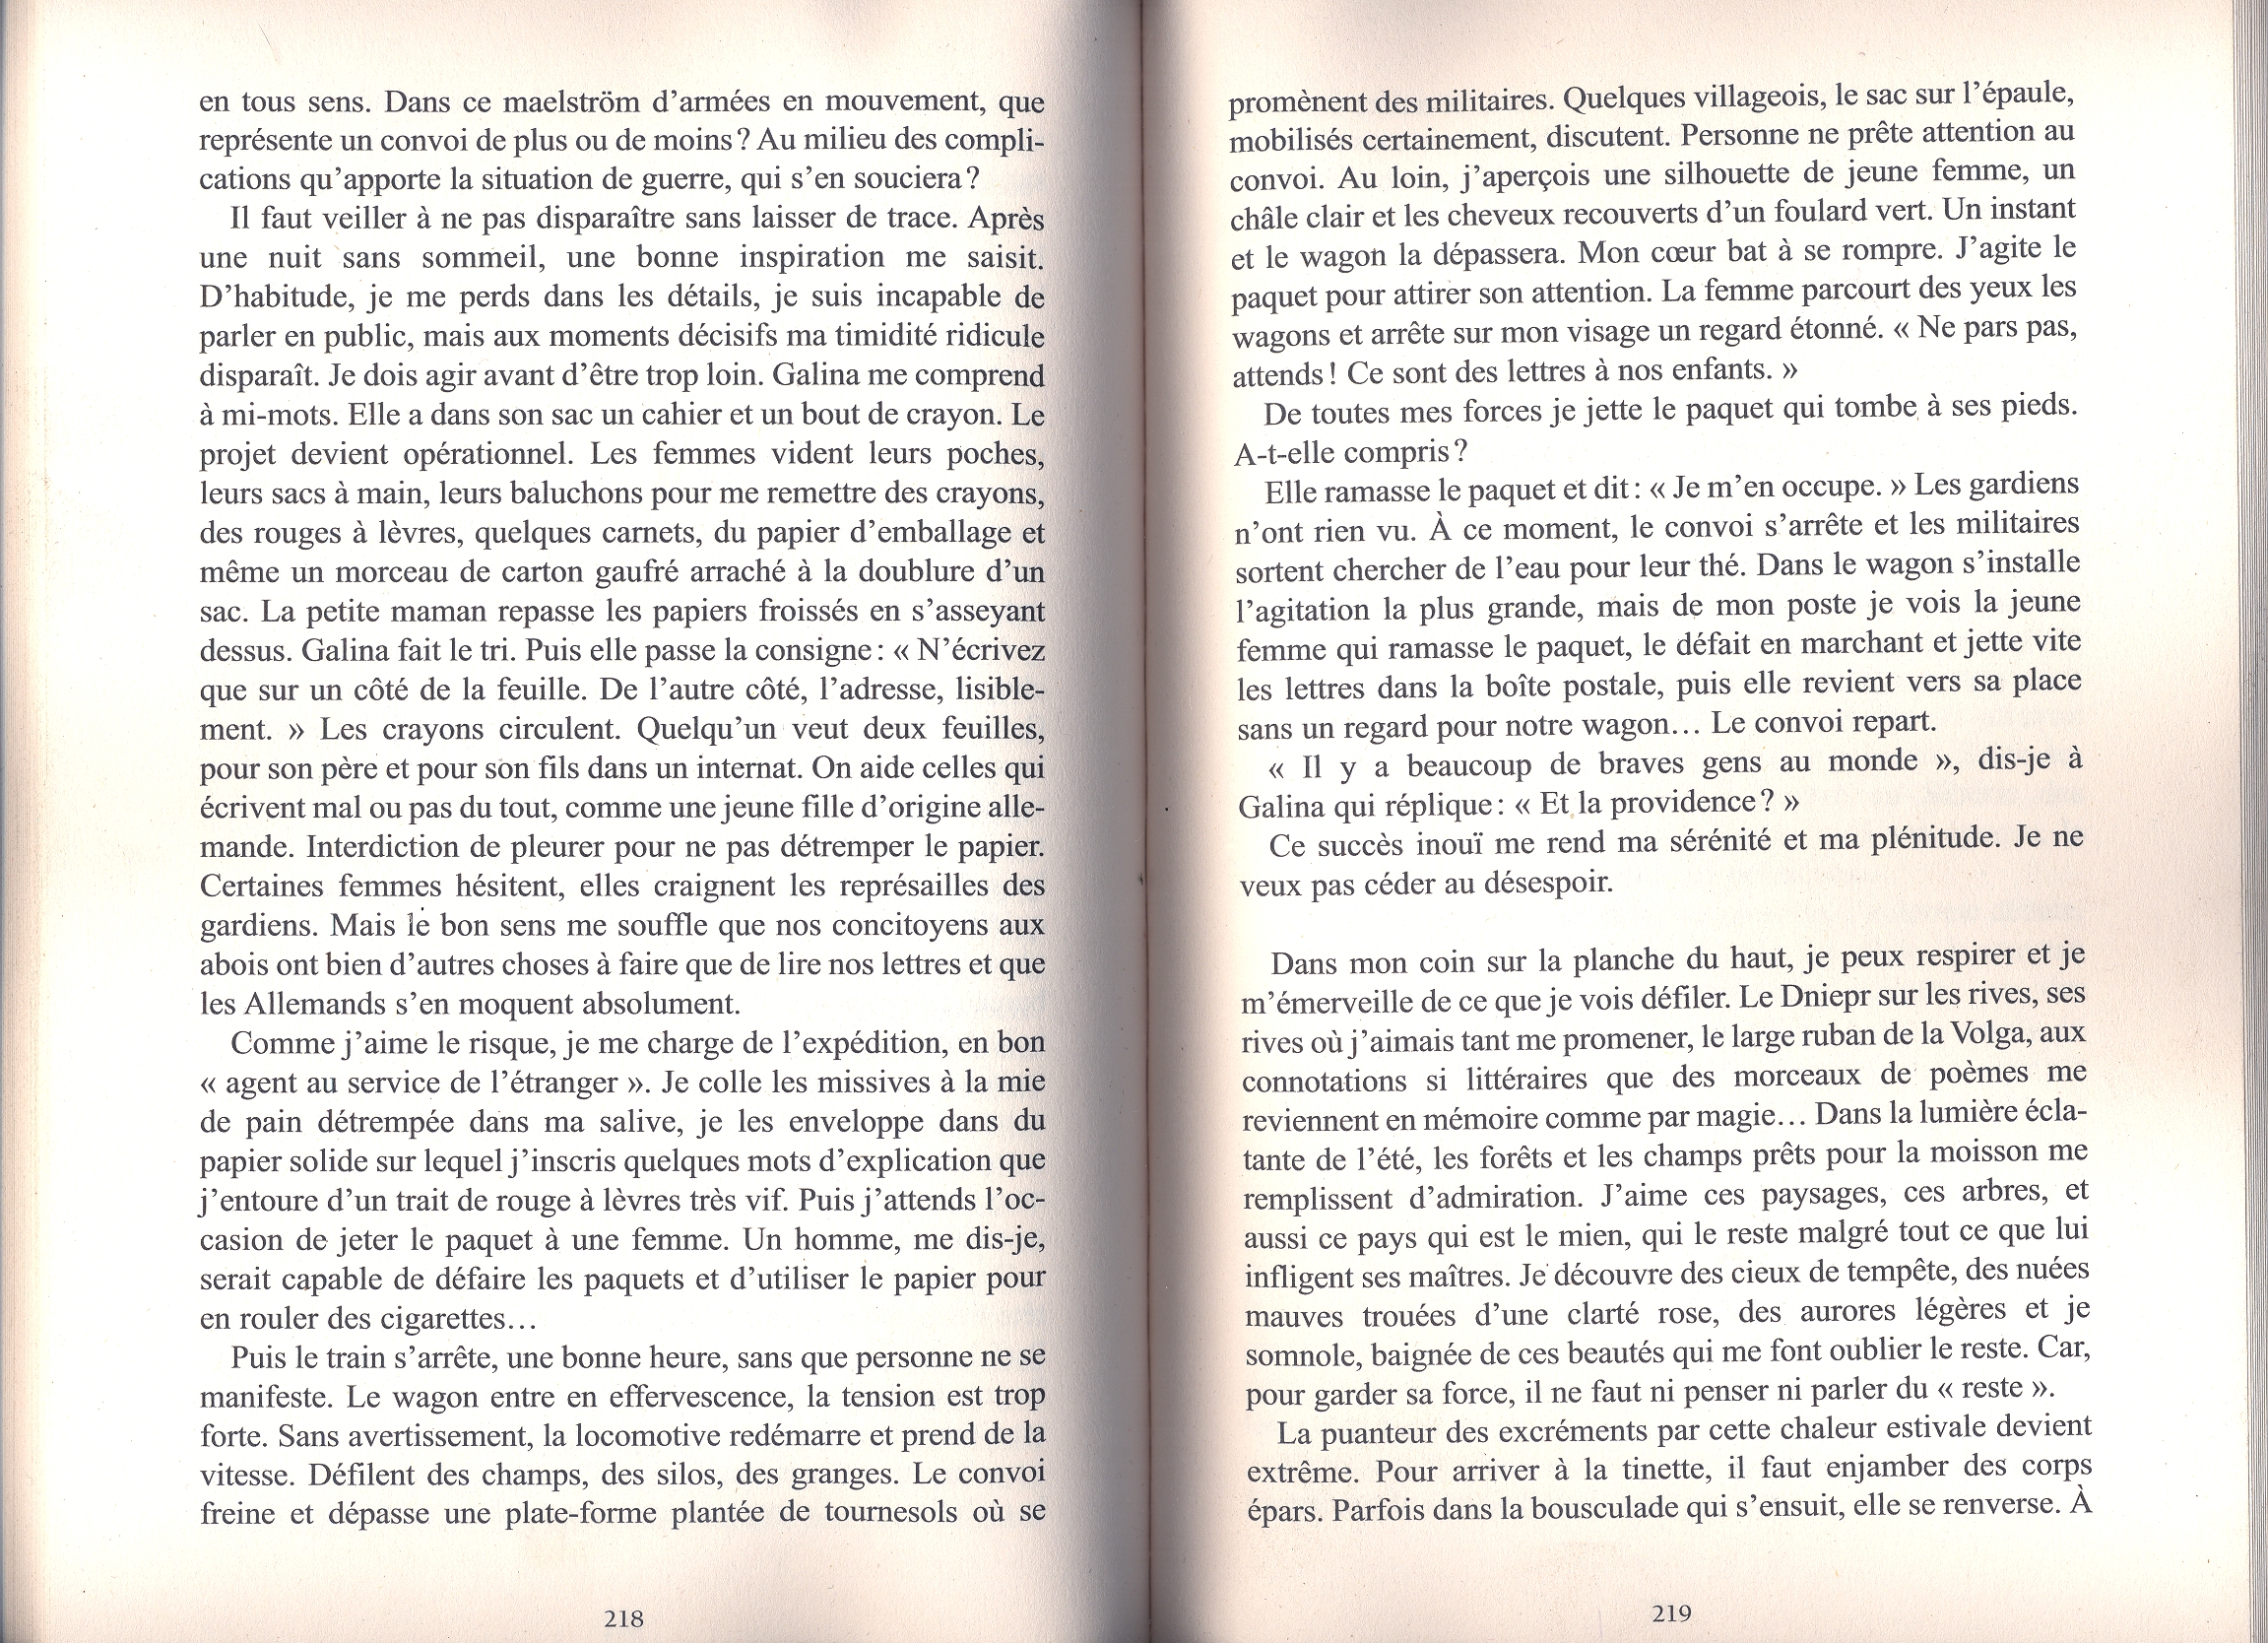 RC BIB Roman. Epopée Tristes printemps. Le convoi pages 218-9 par Anne Hogenhuis. Editions du Rocher. 2012-04-27